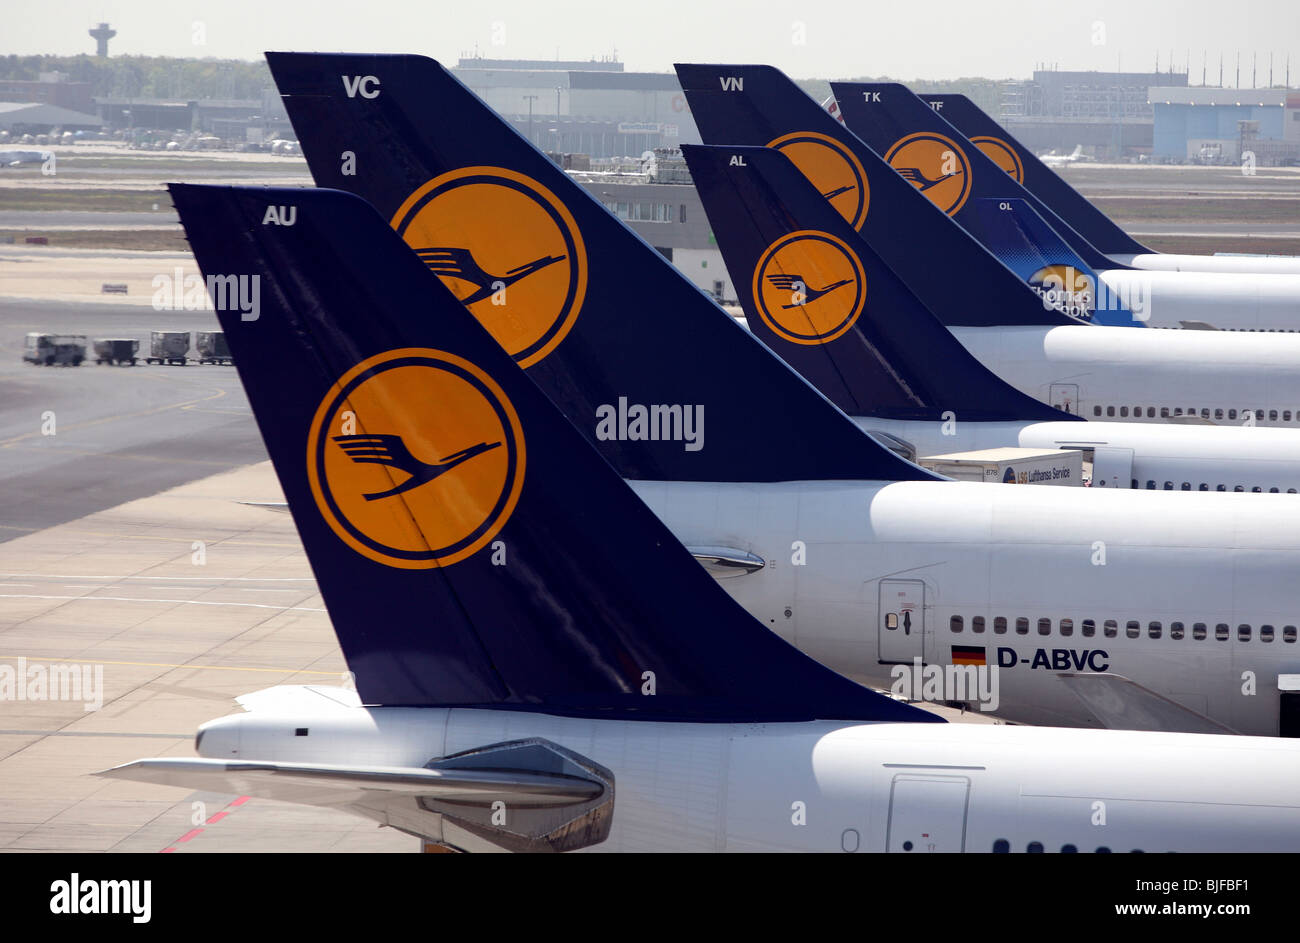 Machines de Lufthansa et de Thomas Cook à l'aéroport, Frankfurt am Main, Allemagne Banque D'Images